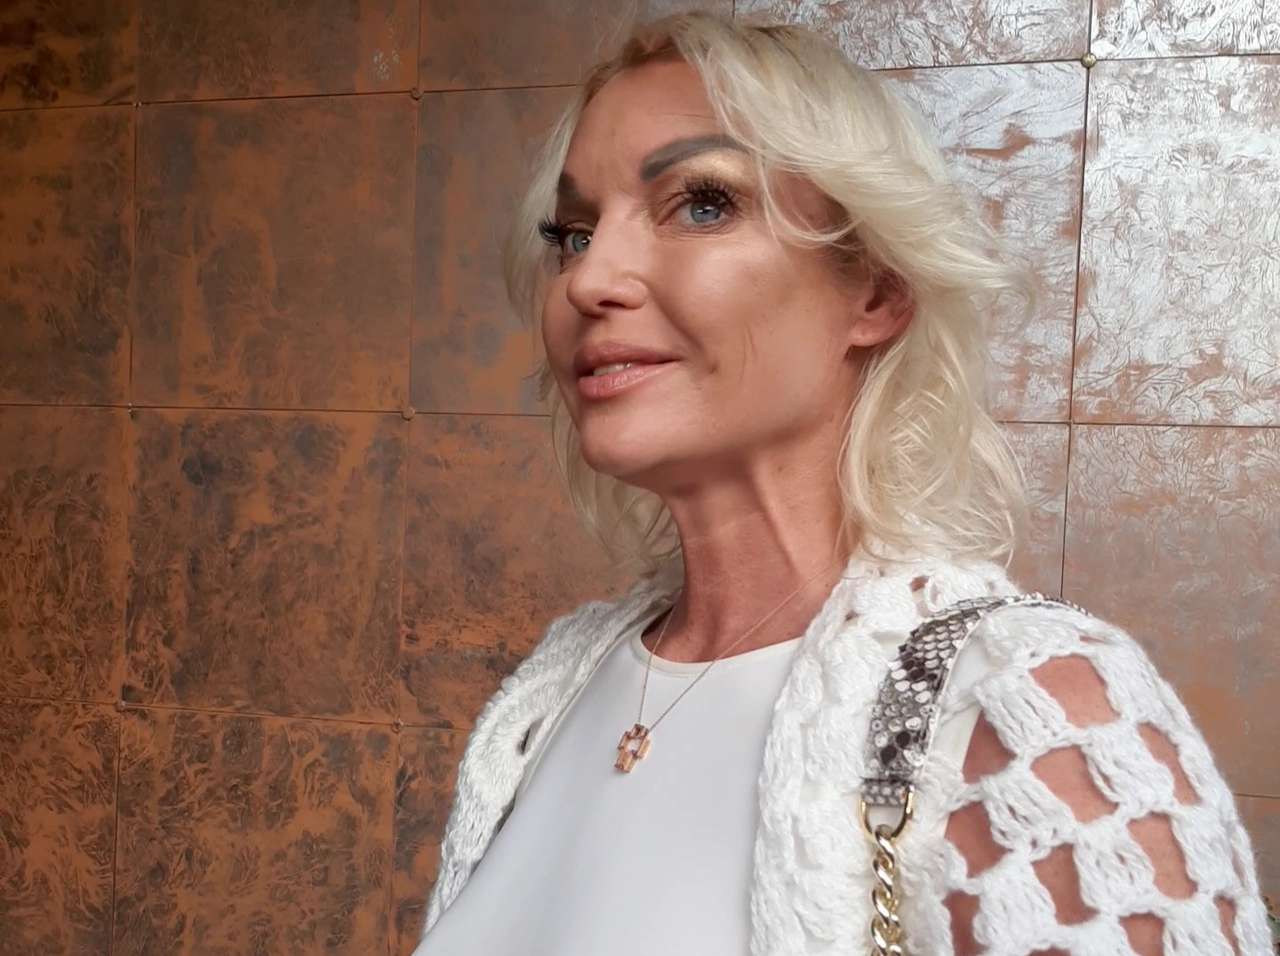 Волочкова опубликовала фото из постели, но попросила не следить за ее жизнью